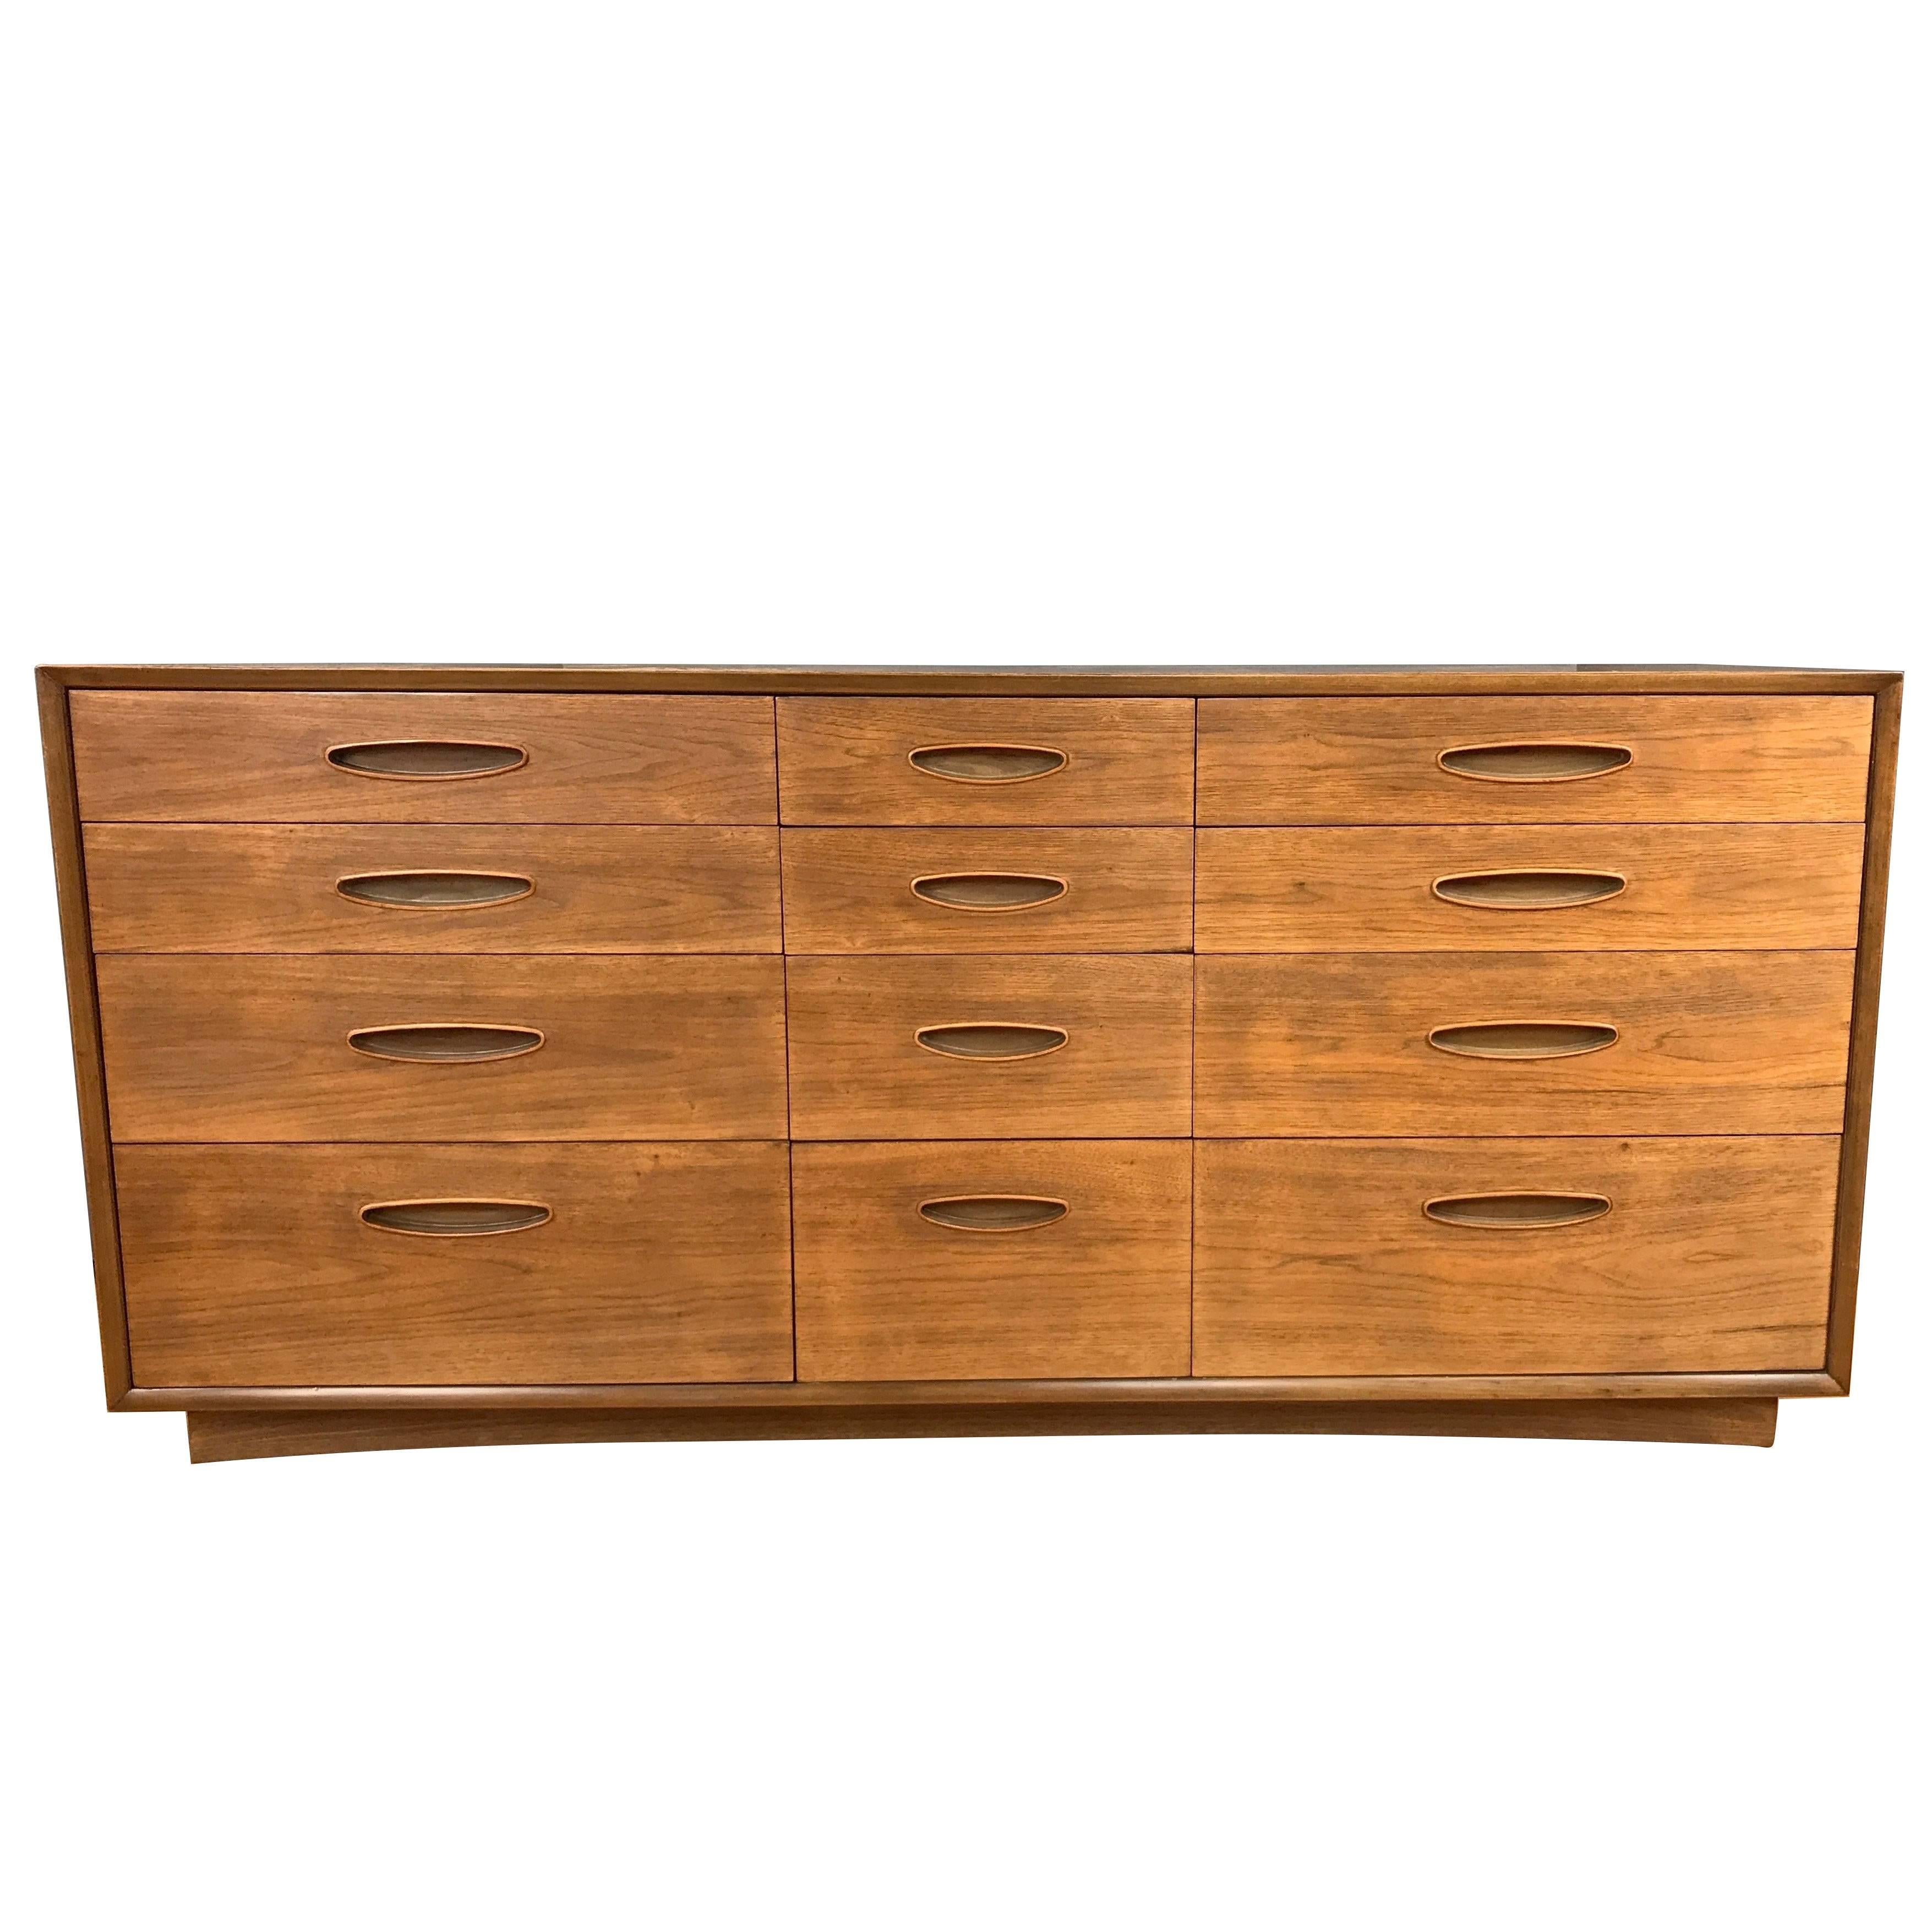 Henredon “Circa ’60 Collection” Twelve-Drawer Walnut Dresser